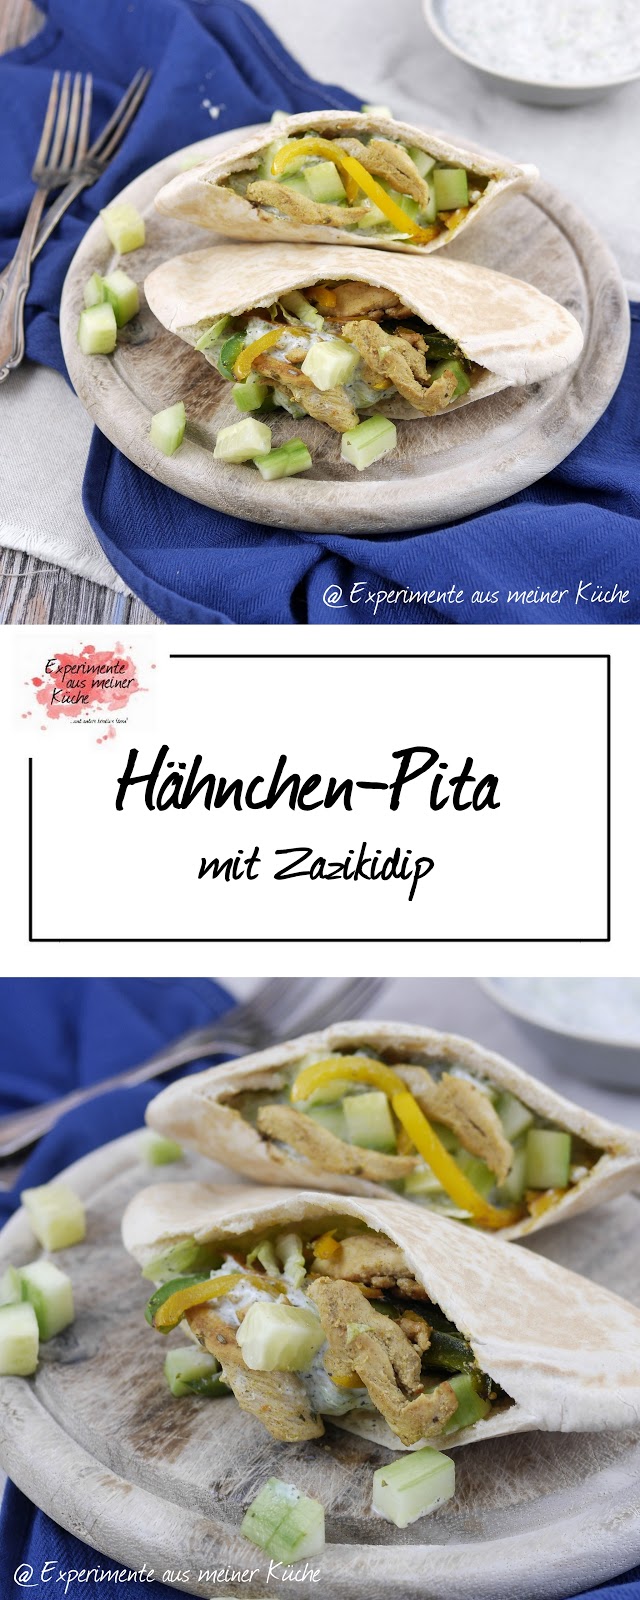 Experimente aus meiner Küche: Hähnchen-Pita mit Zazikidip